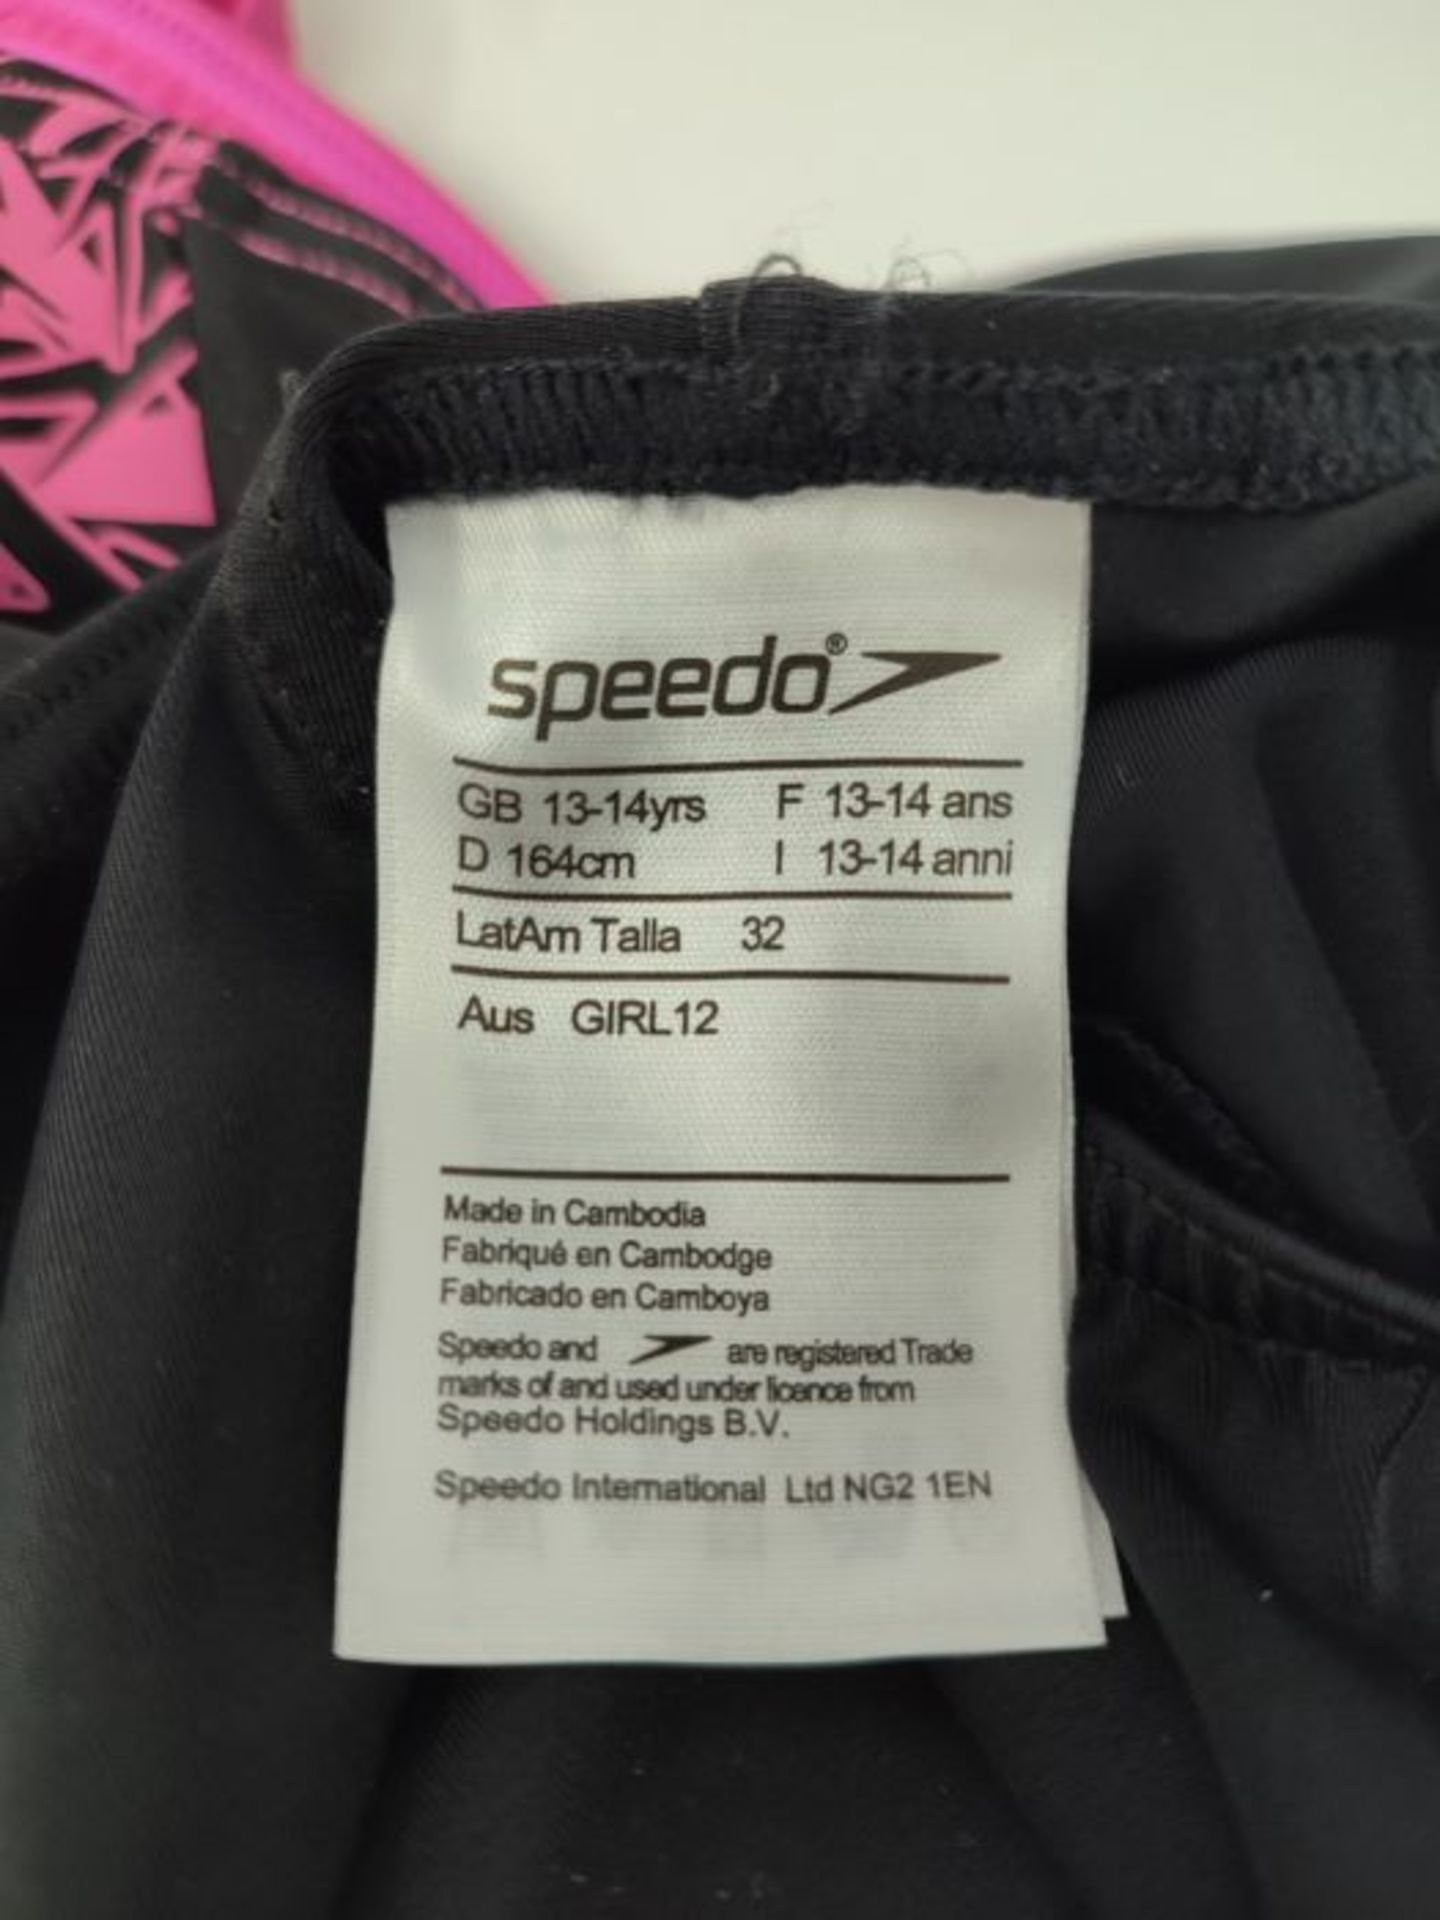 Speedo MÃ¤dchen Swimwear Boom Splice Muscleback, Black/Electric Pink, 164, 8-10844B3 - Image 3 of 3